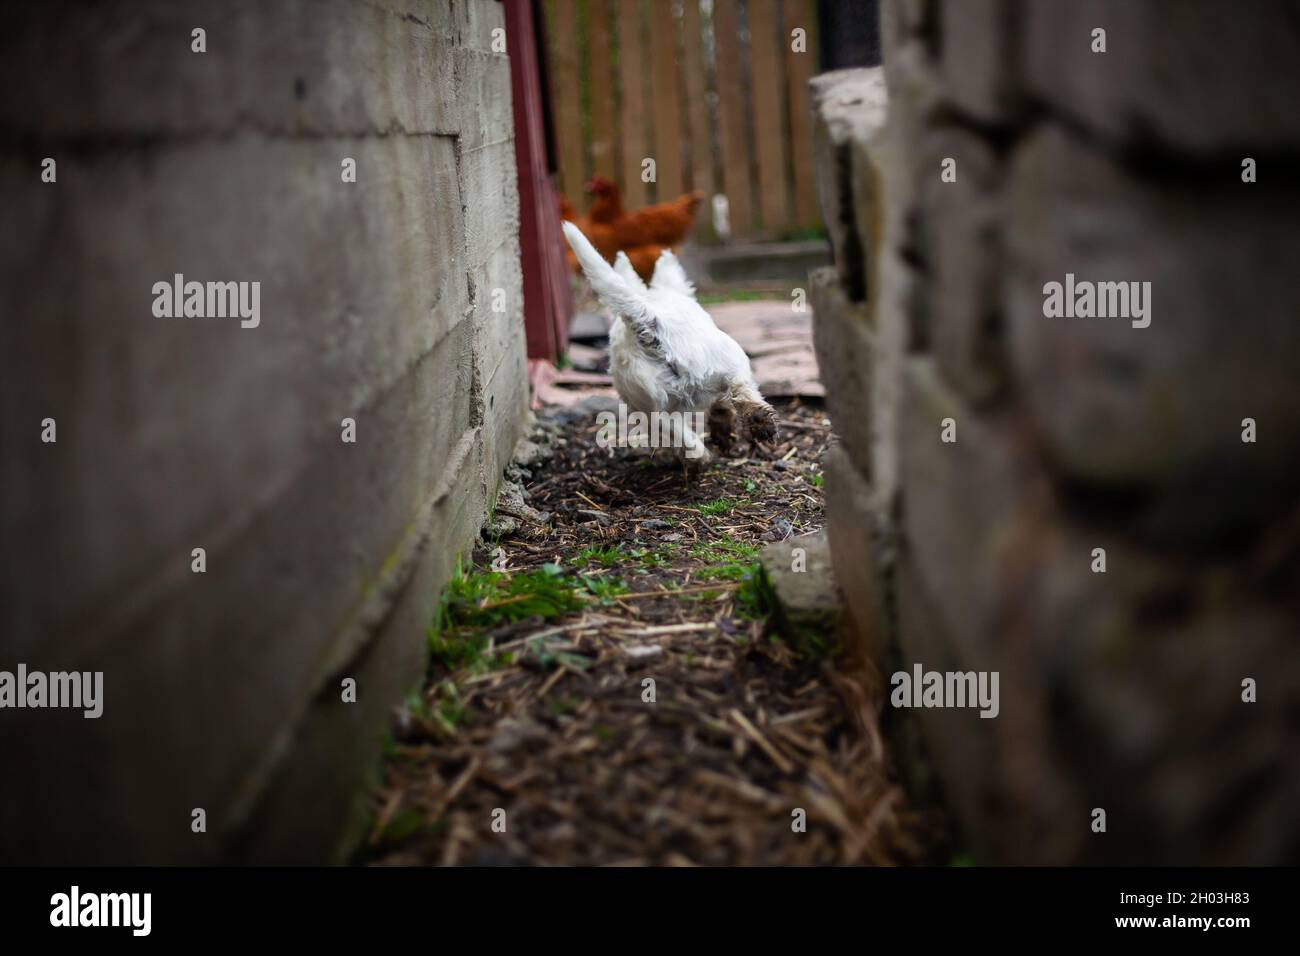 Happy West Highland bianco terrier cane gioco inseguimento che corre via dalla macchina fotografica in fattoria giardino con polli in background Foto Stock